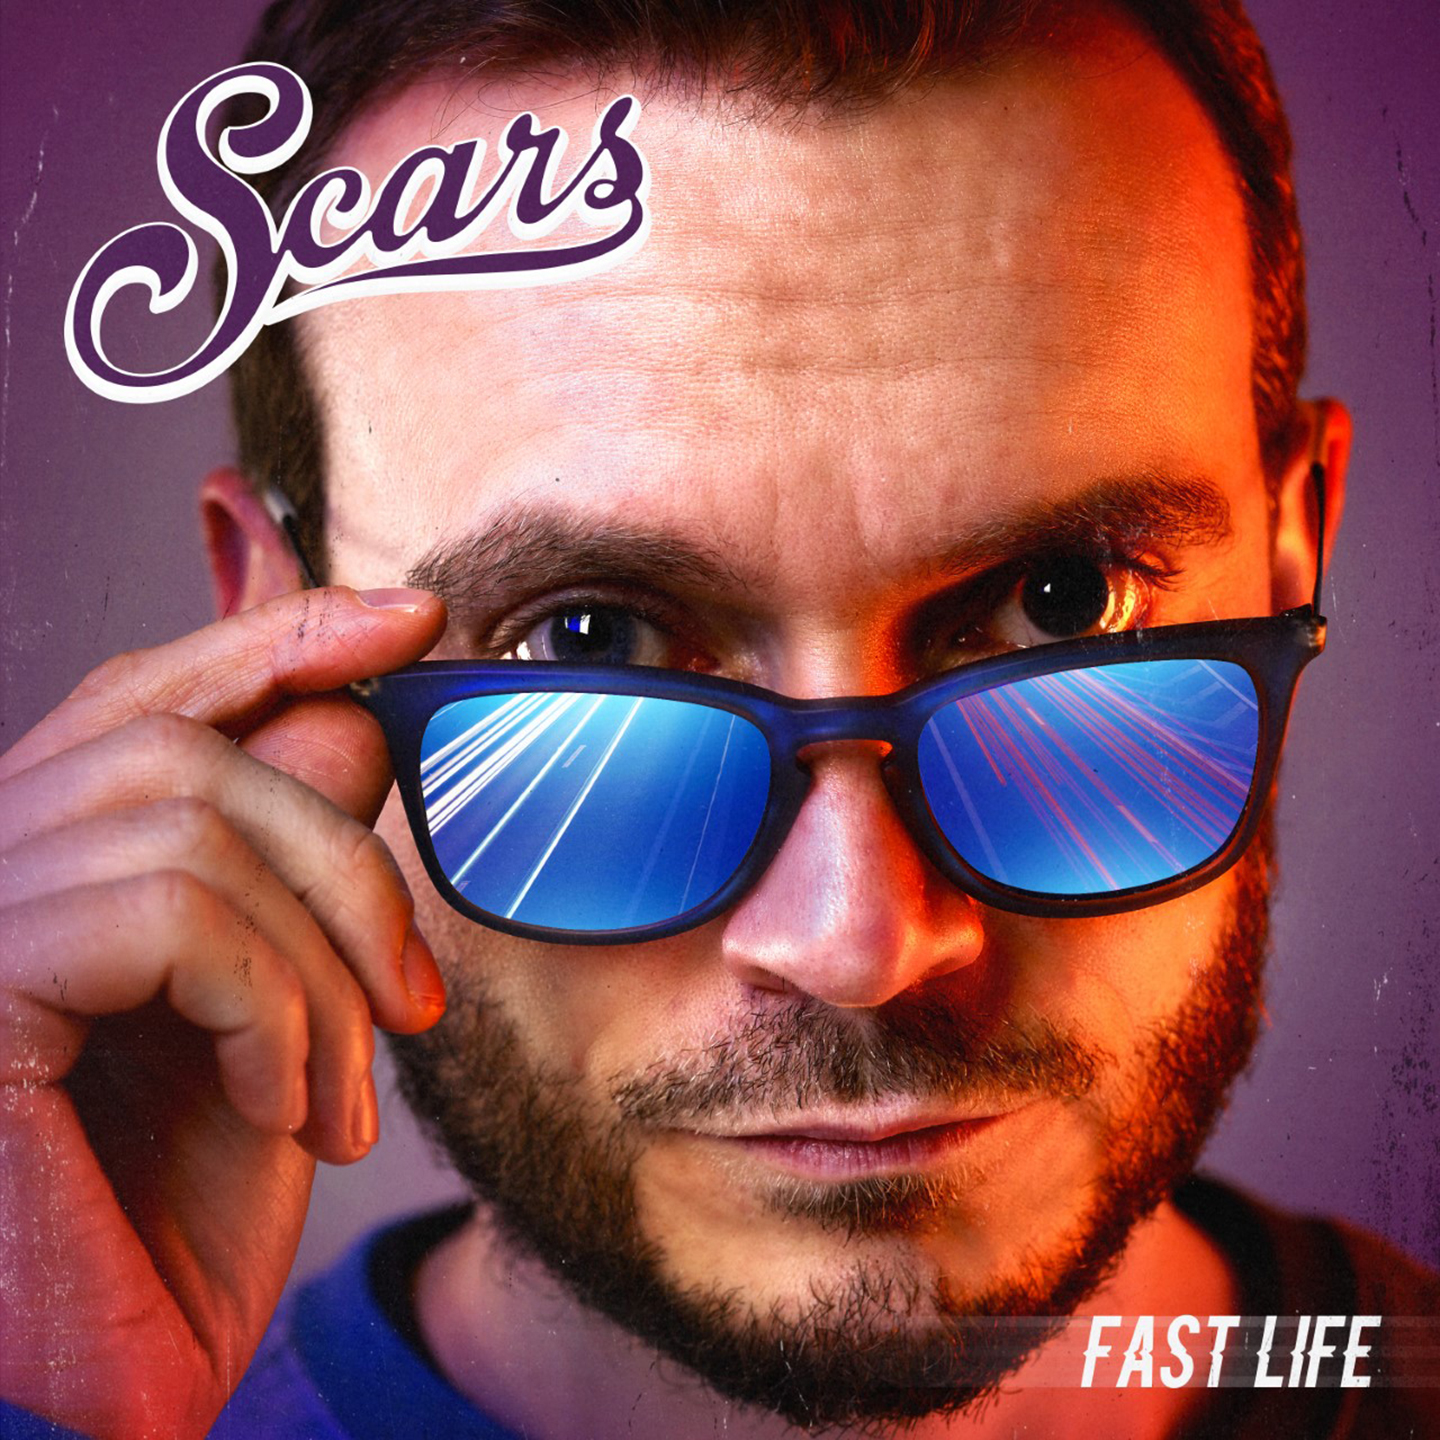 Cover de l'album de Scars - Fast- Life. Réalisé par Loseou